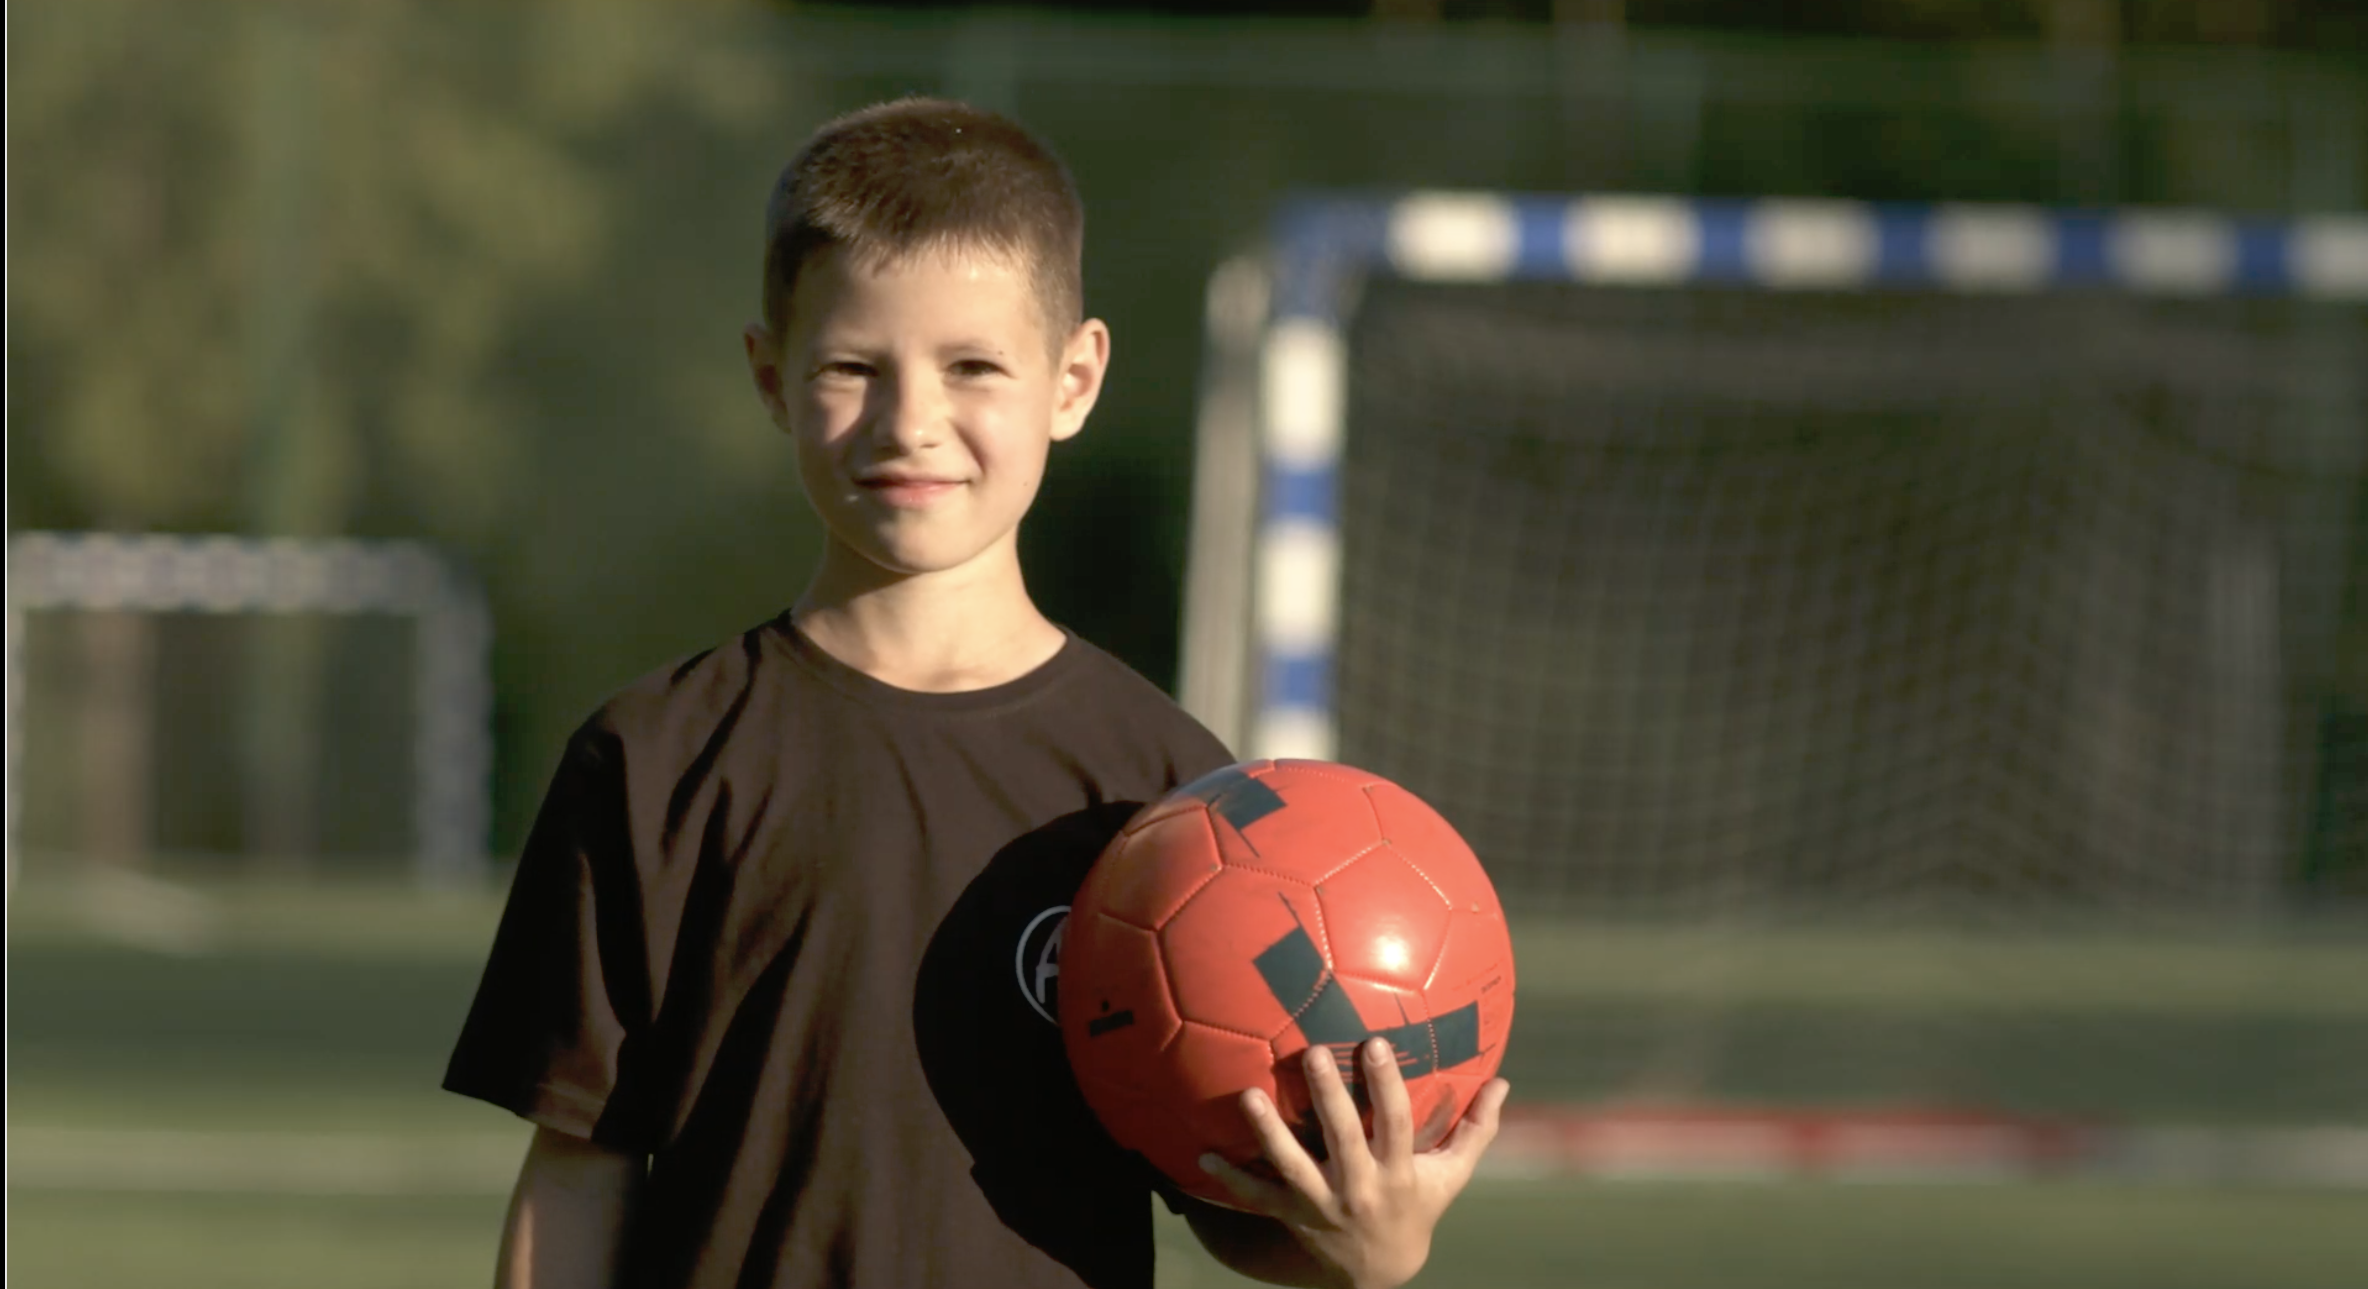 "AF FOOTBALL" - безопасность детей